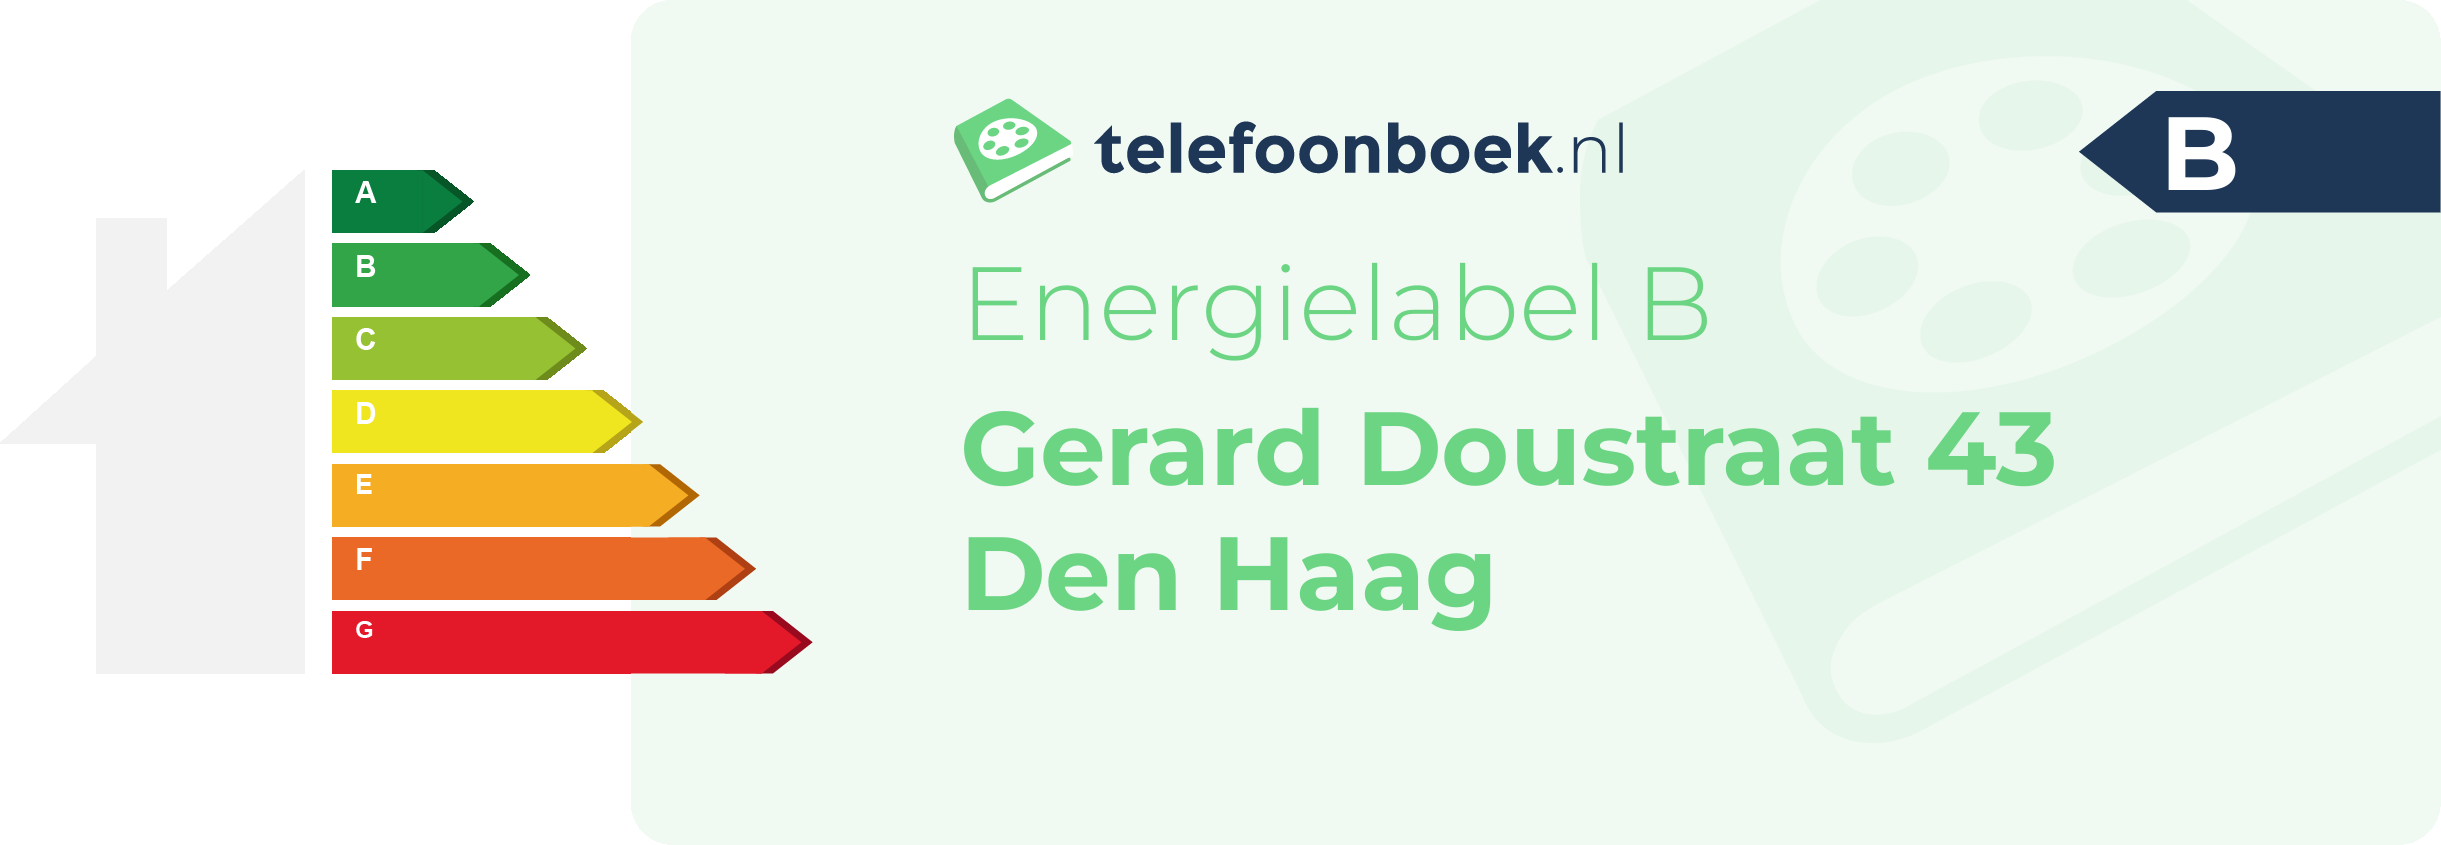 Energielabel Gerard Doustraat 43 Den Haag